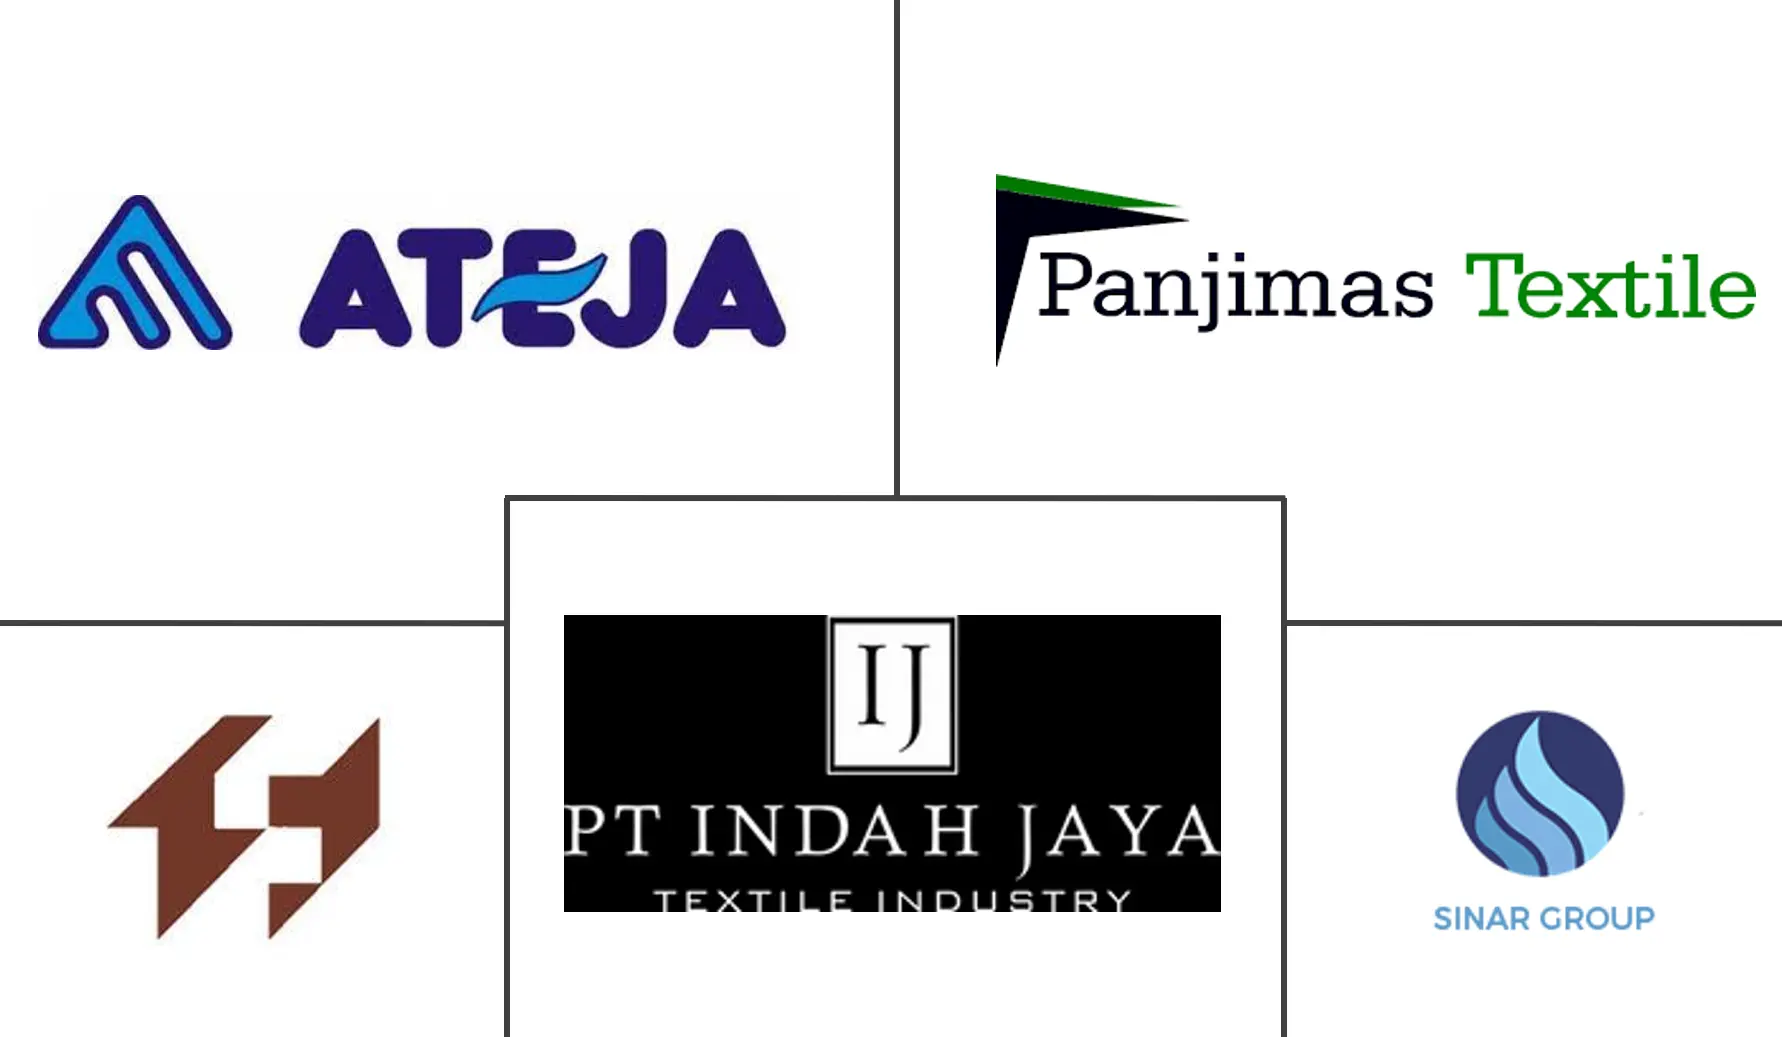 インドネシアのホームテキスタイル市場の主要企業